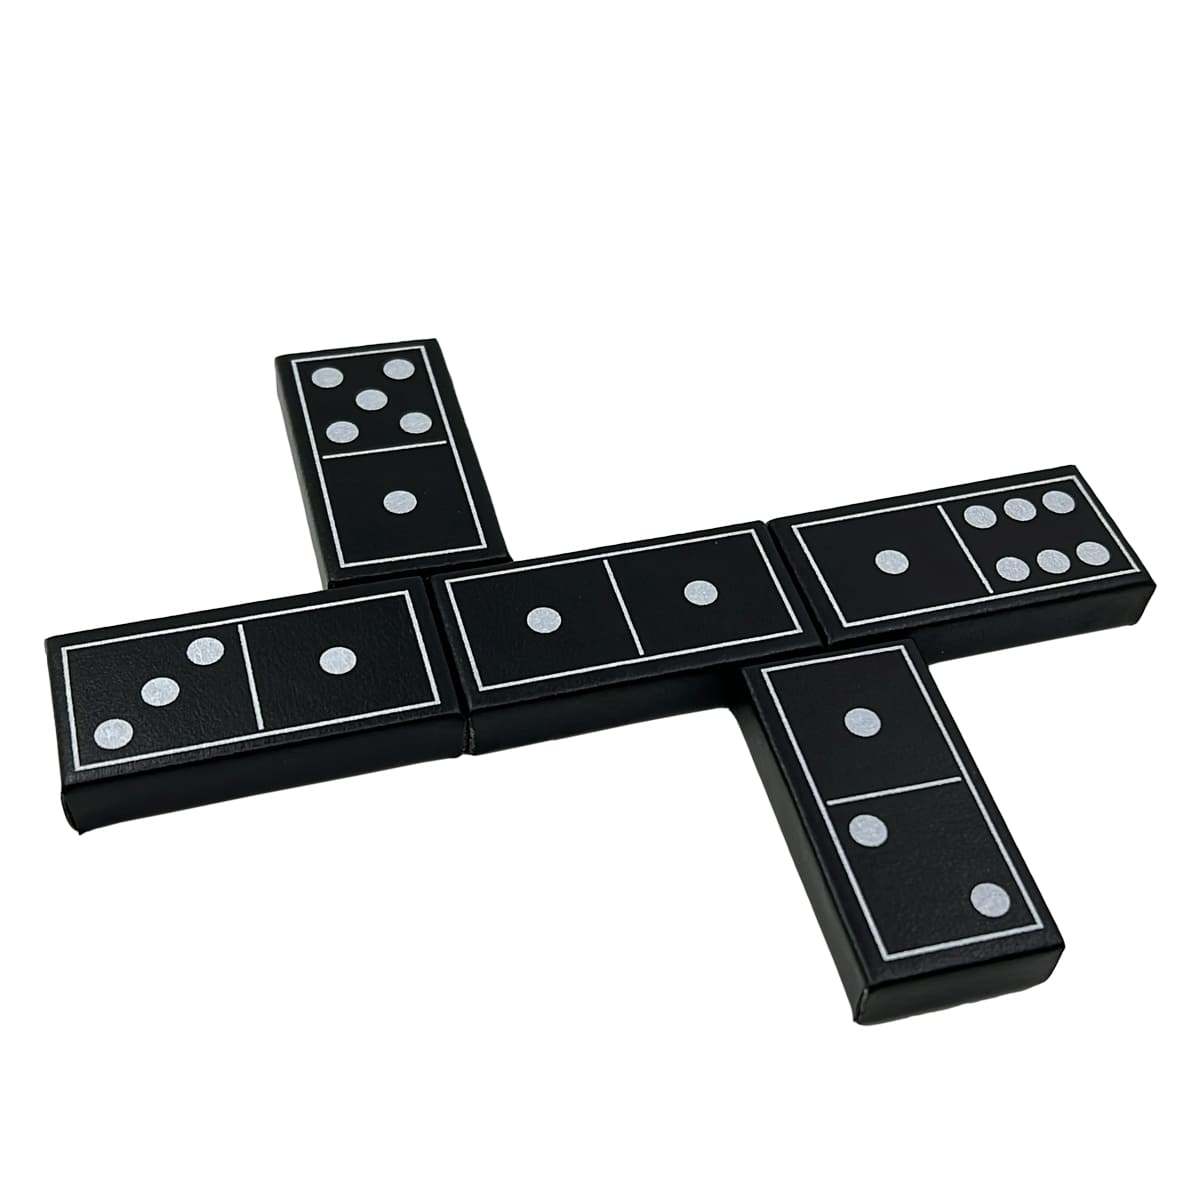 Conjuntos de dominó de luxo duplo seis padrão 28 telhas com estojo de couro preto